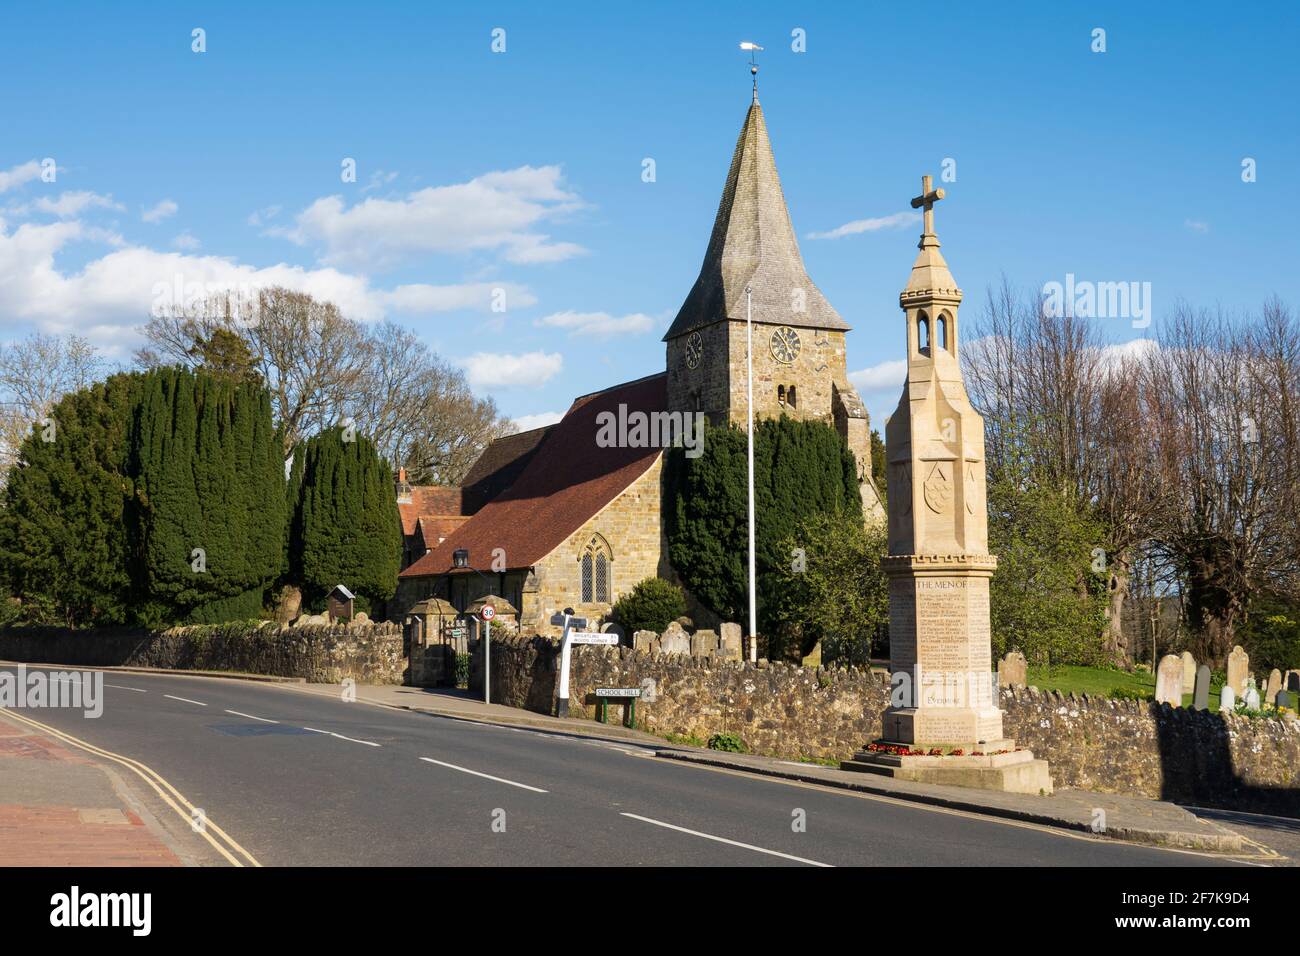 L'église St Bartholomew et le mémorial de guerre sur High Street dans le village de High Weald de Burwash, East Sussex, Angleterre, Royaume-Uni, Europe Banque D'Images